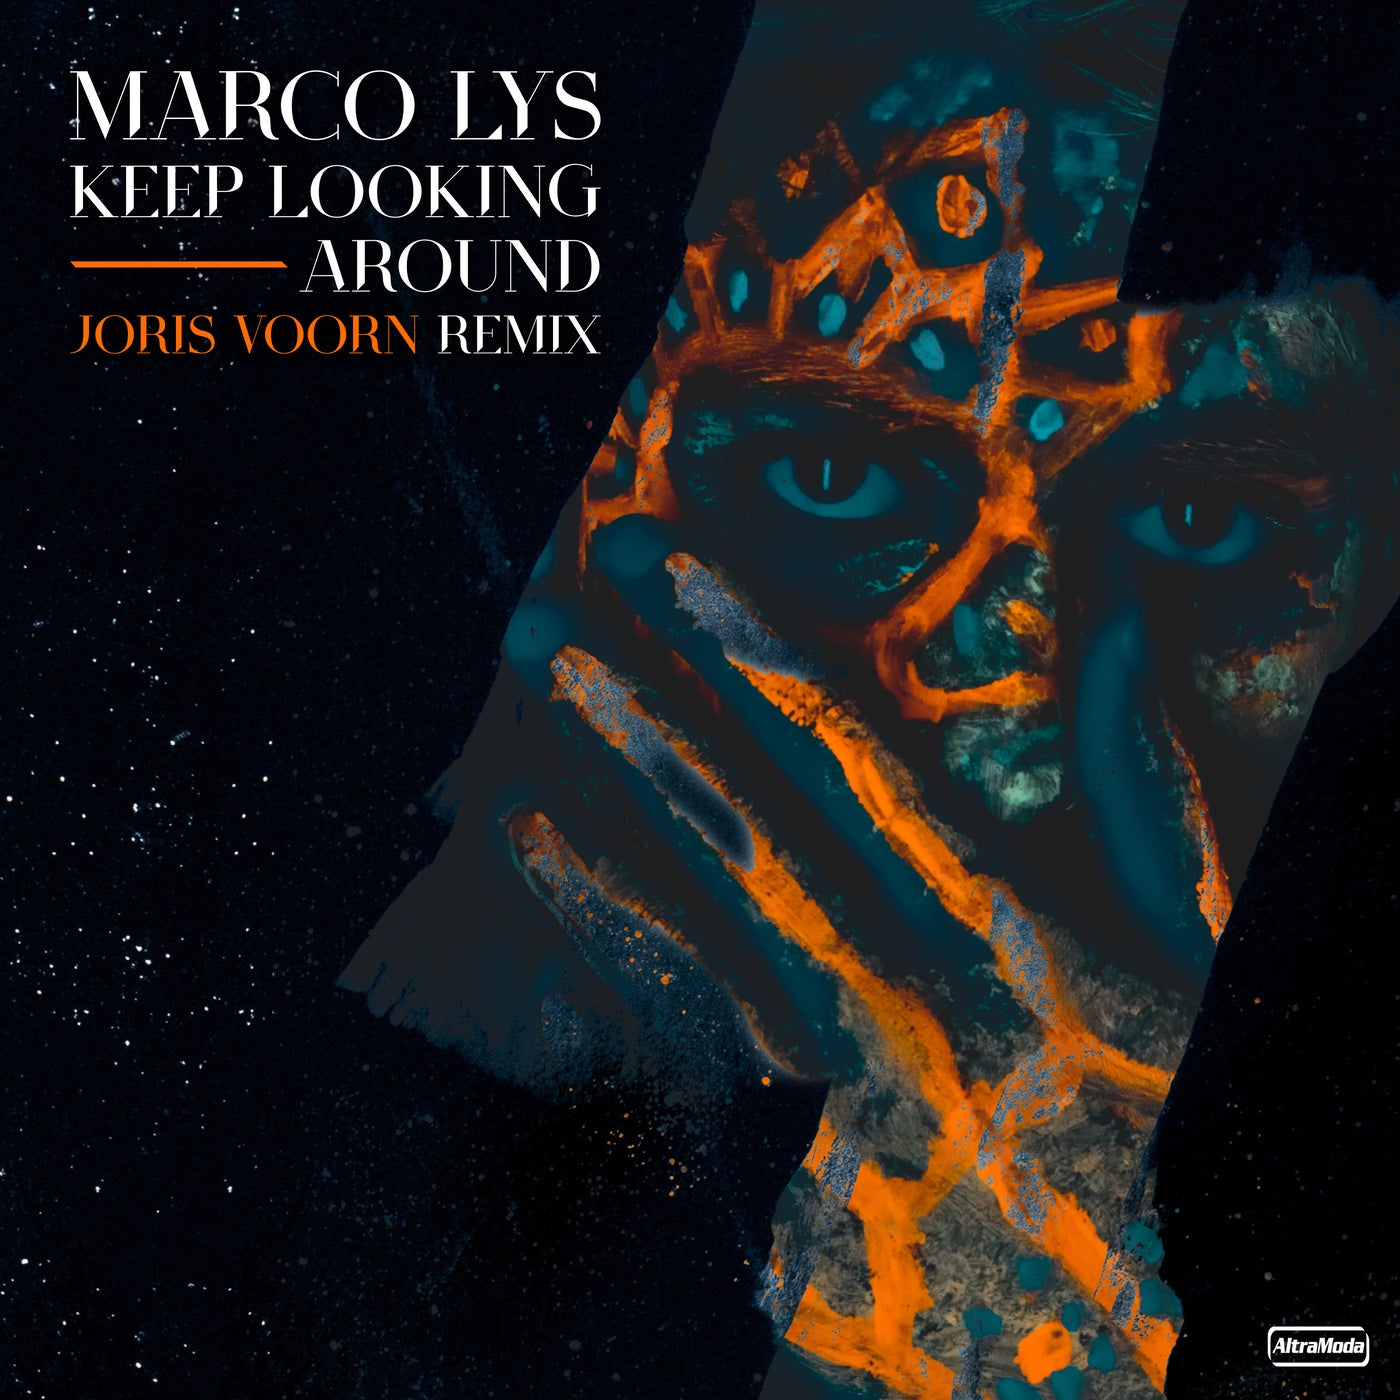 Marco Lys - Keep Looking Around (Joris Voorn Remix)